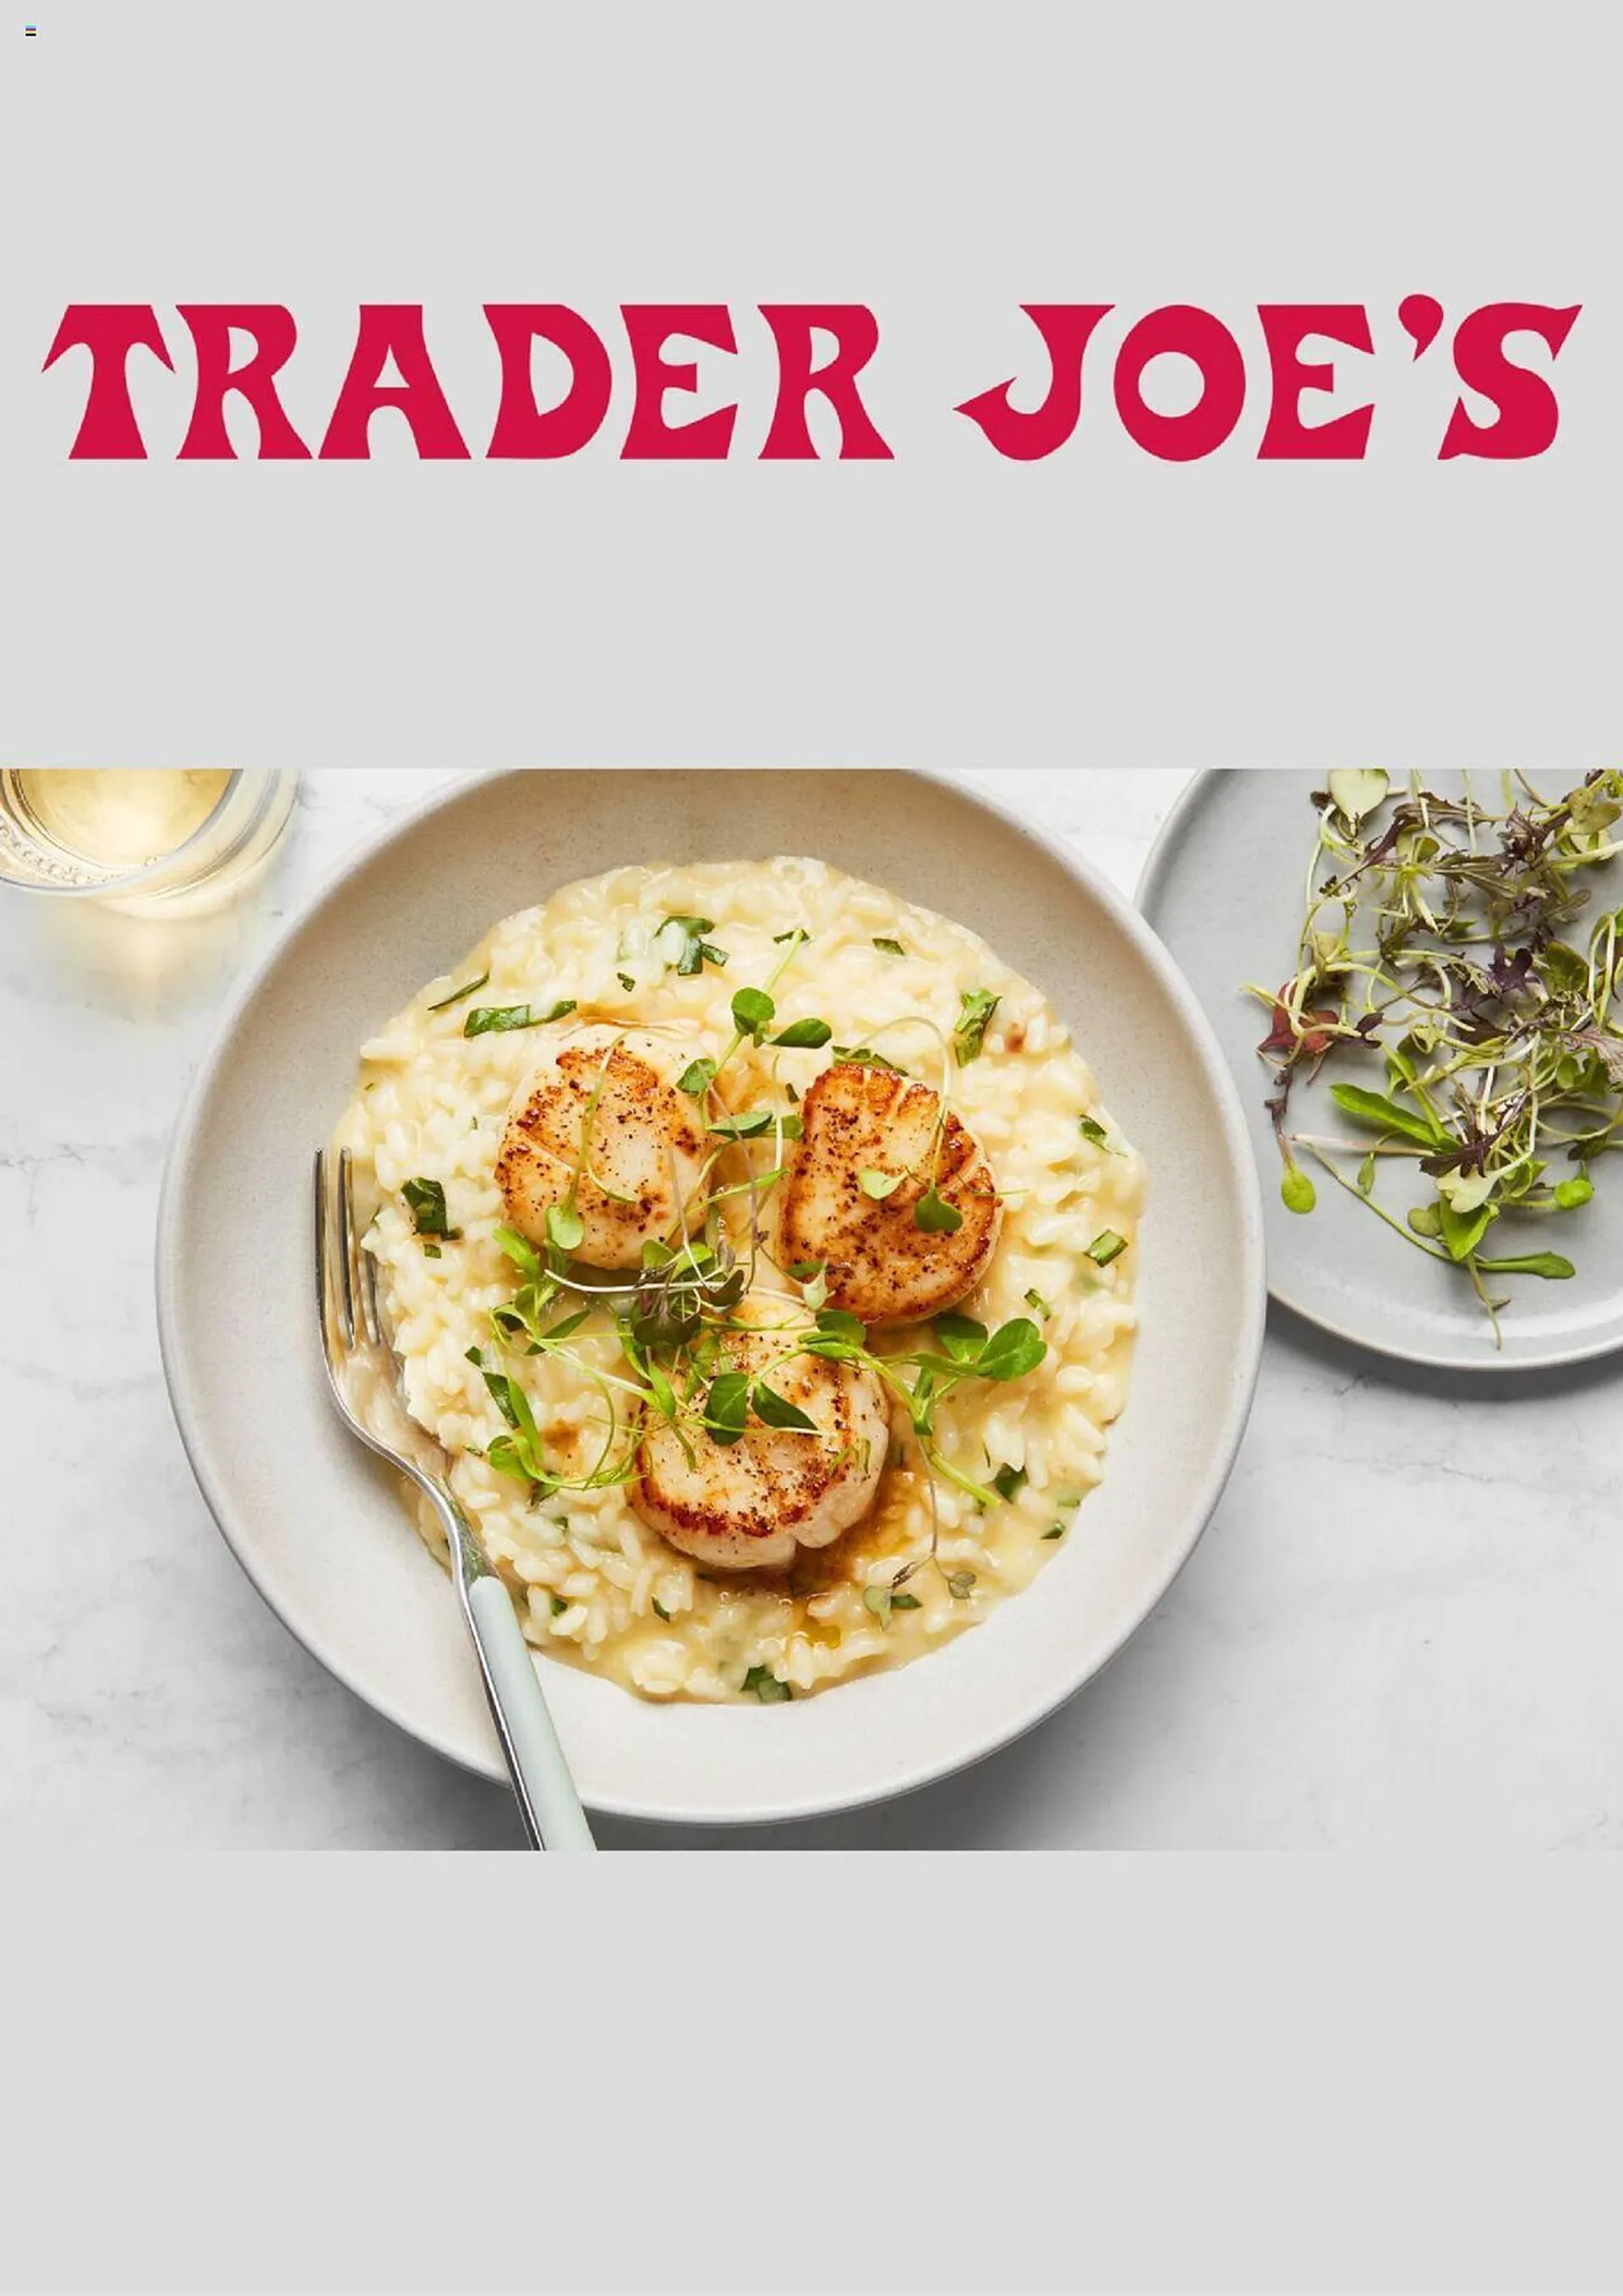 Trader Joes ad - 1